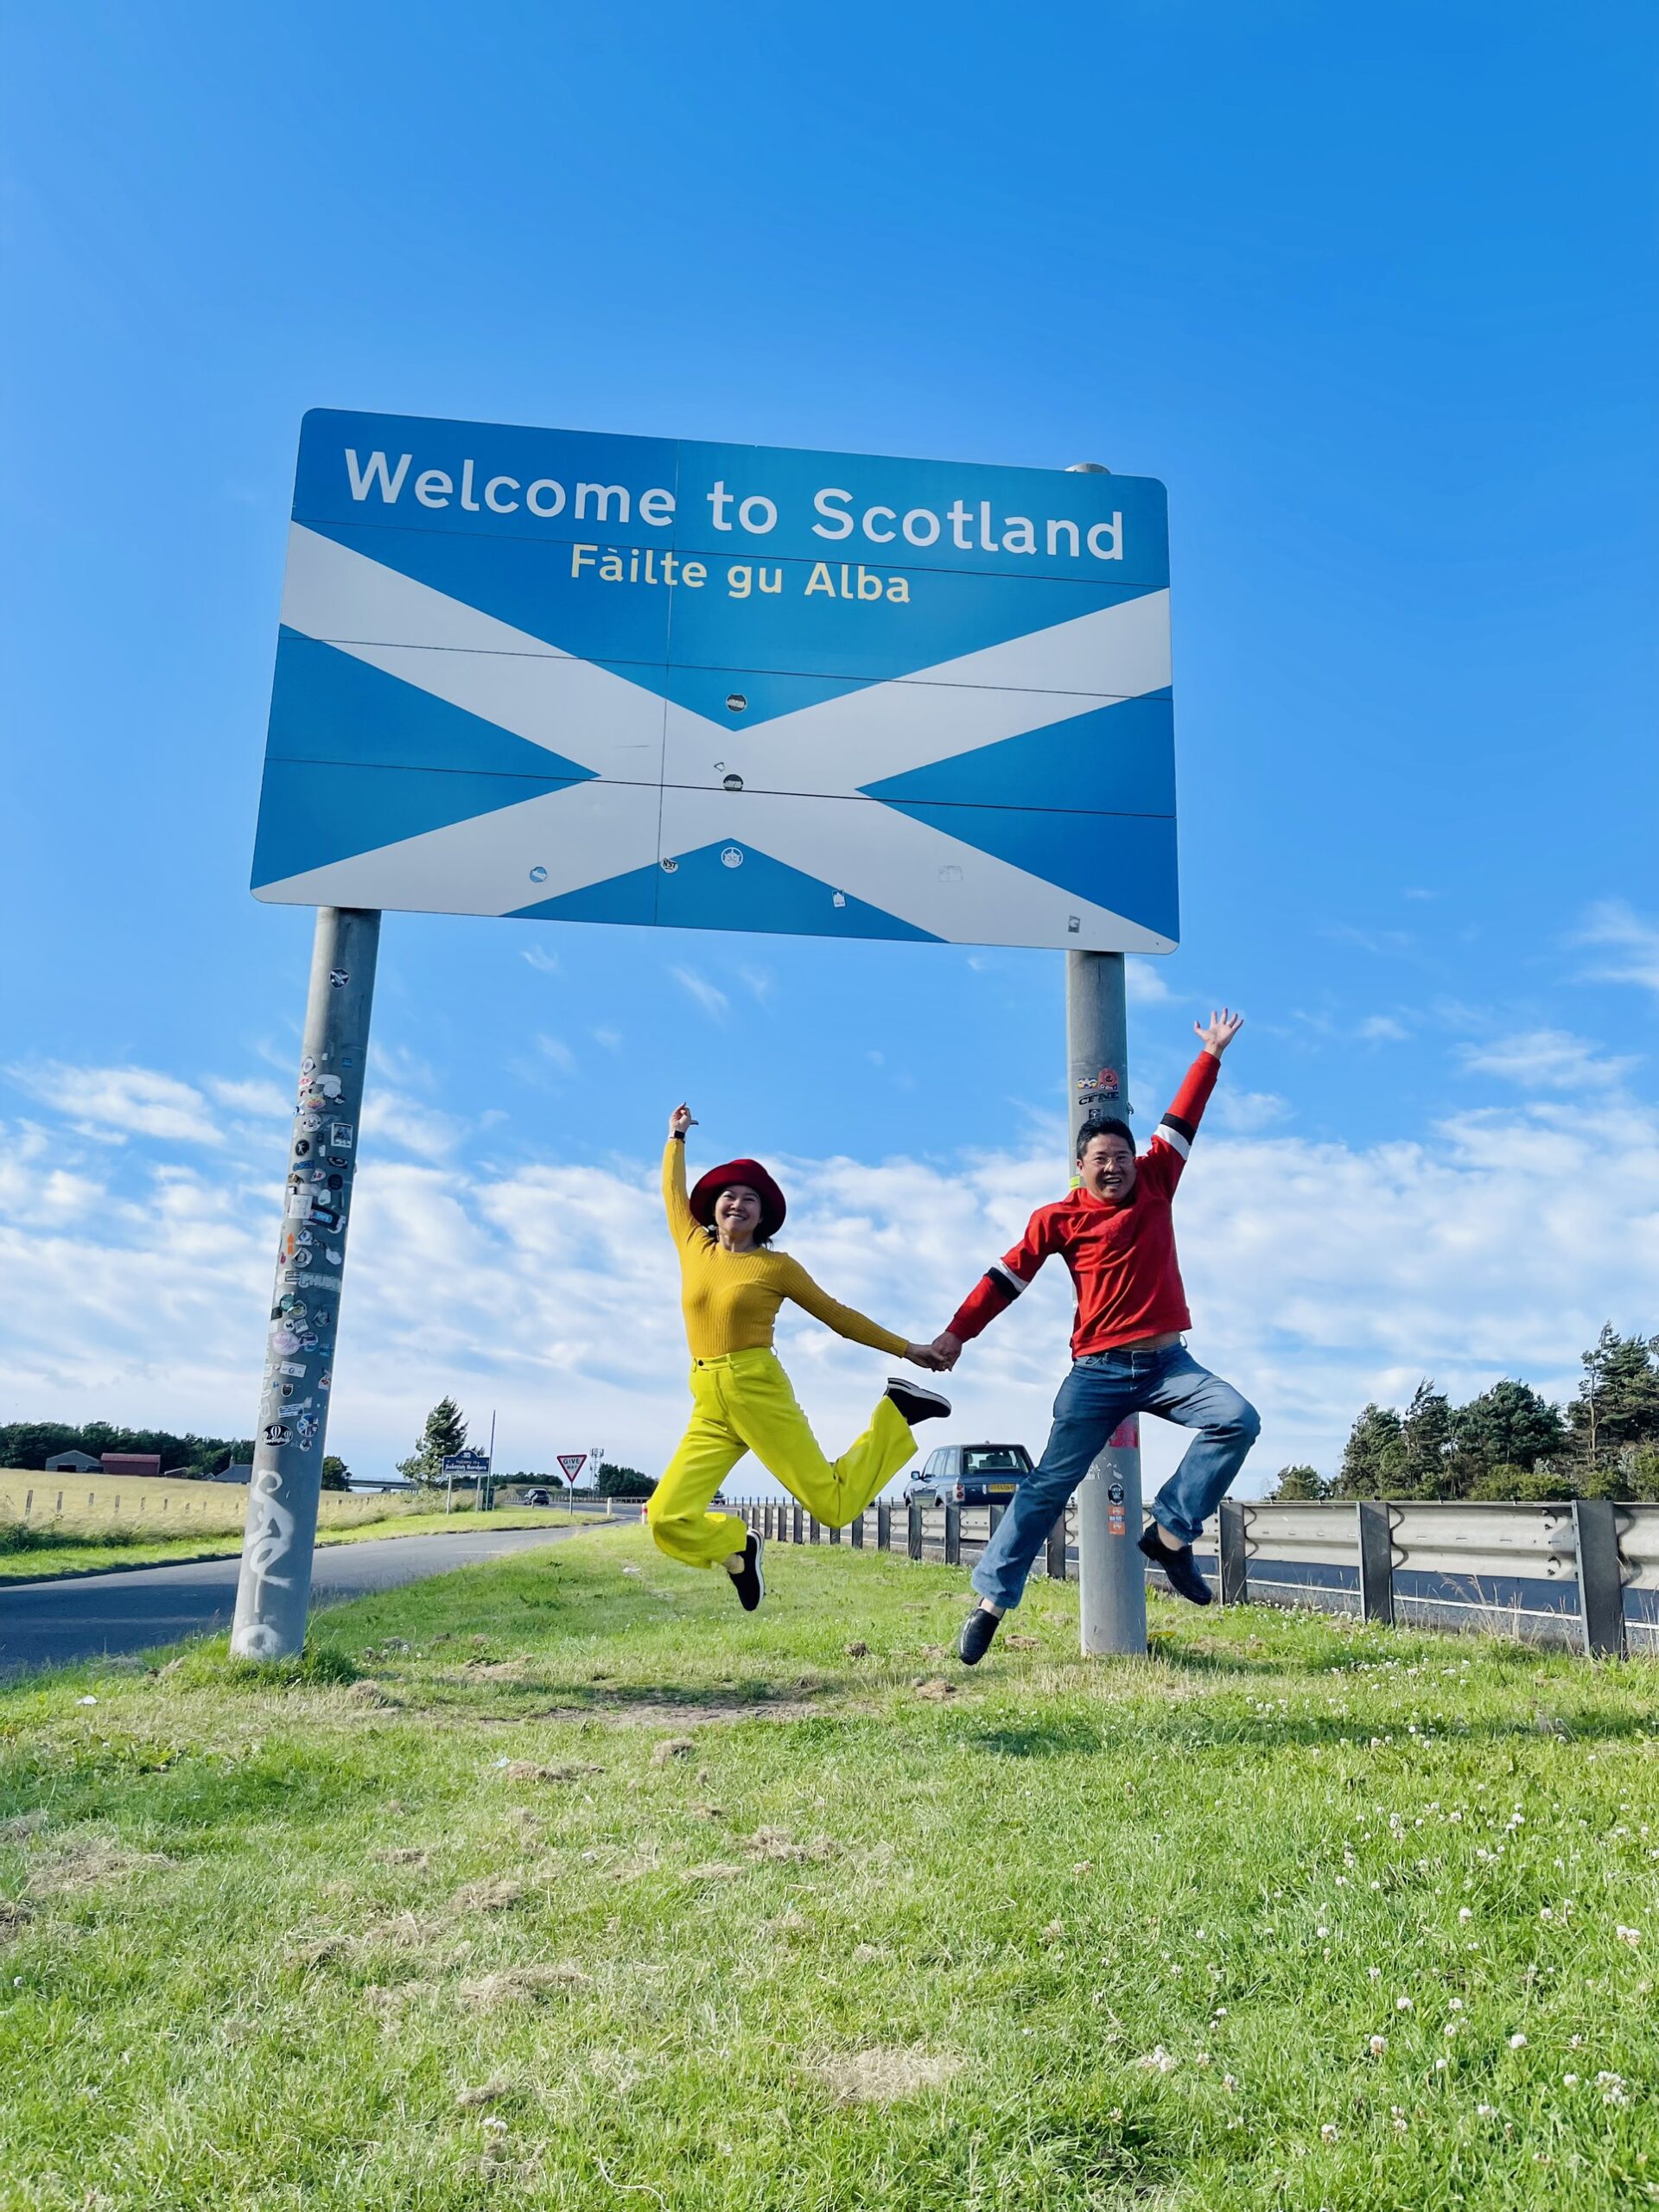 Scotland: Scotland là nơi tuyệt vời để tham quan và khám phá với những vùng đất chưa bị ảnh hưởng từ cuộc cách mạng công nghiệp. Với vẻ đẹp tự nhiên đồng quê, Scotland tự hào với rừng cây xanh tái tê, những thác nước đẹp mê hồn, những lâu đài và những chùa độc đáo. Hãy khám phá Scotland và tìm thấy sự yên bình với thiên nhiên của nó.